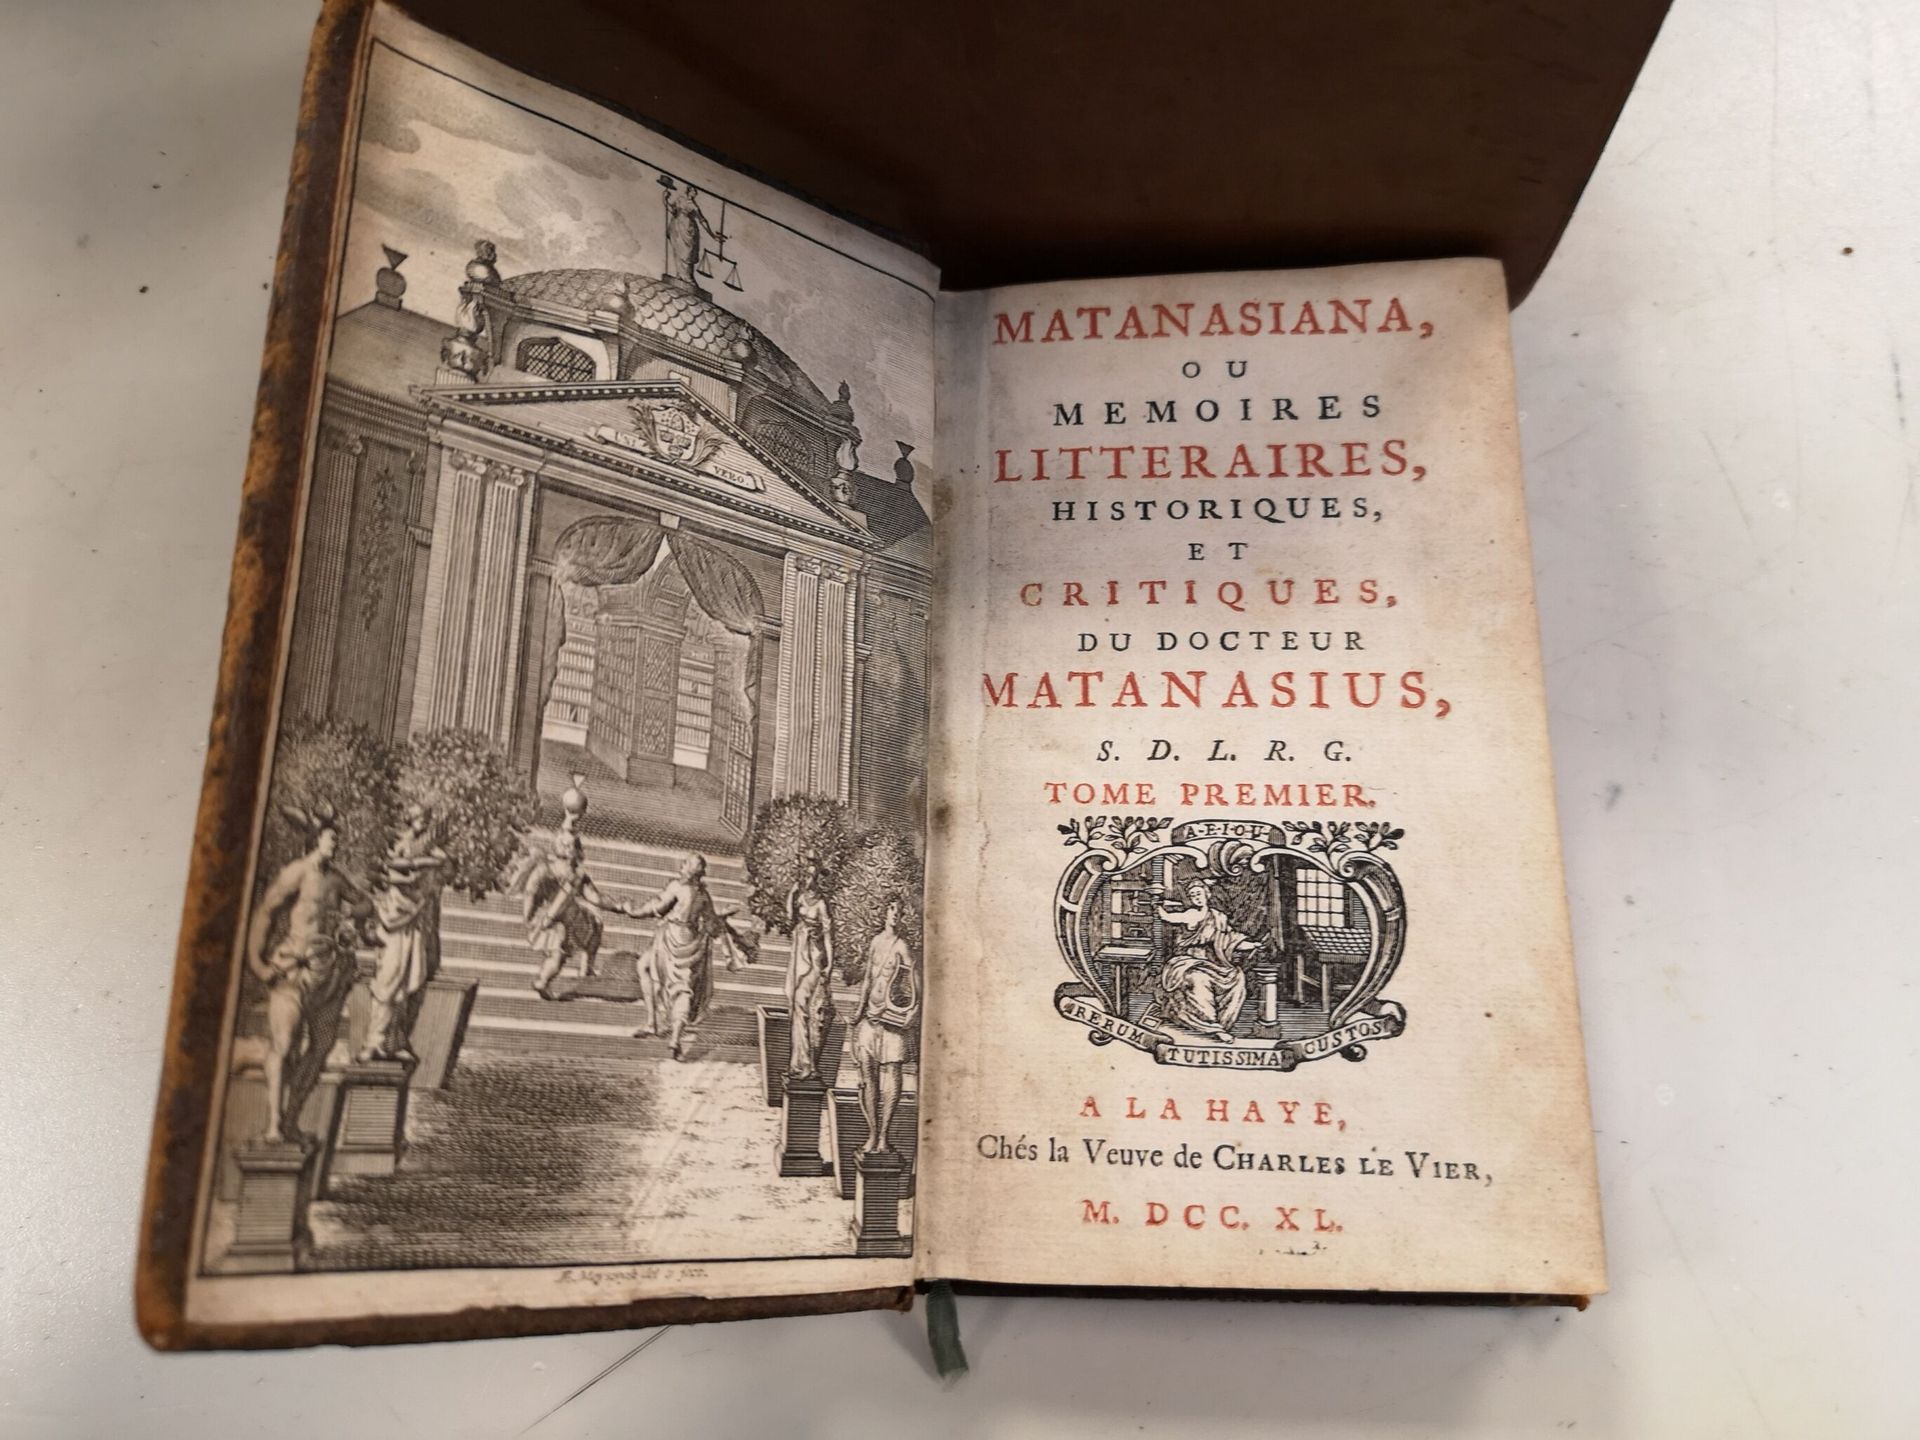 Null 16 libri in vari formati, tra cui:

- L'anno letterario 1765. Amsterdam, J.&hellip;